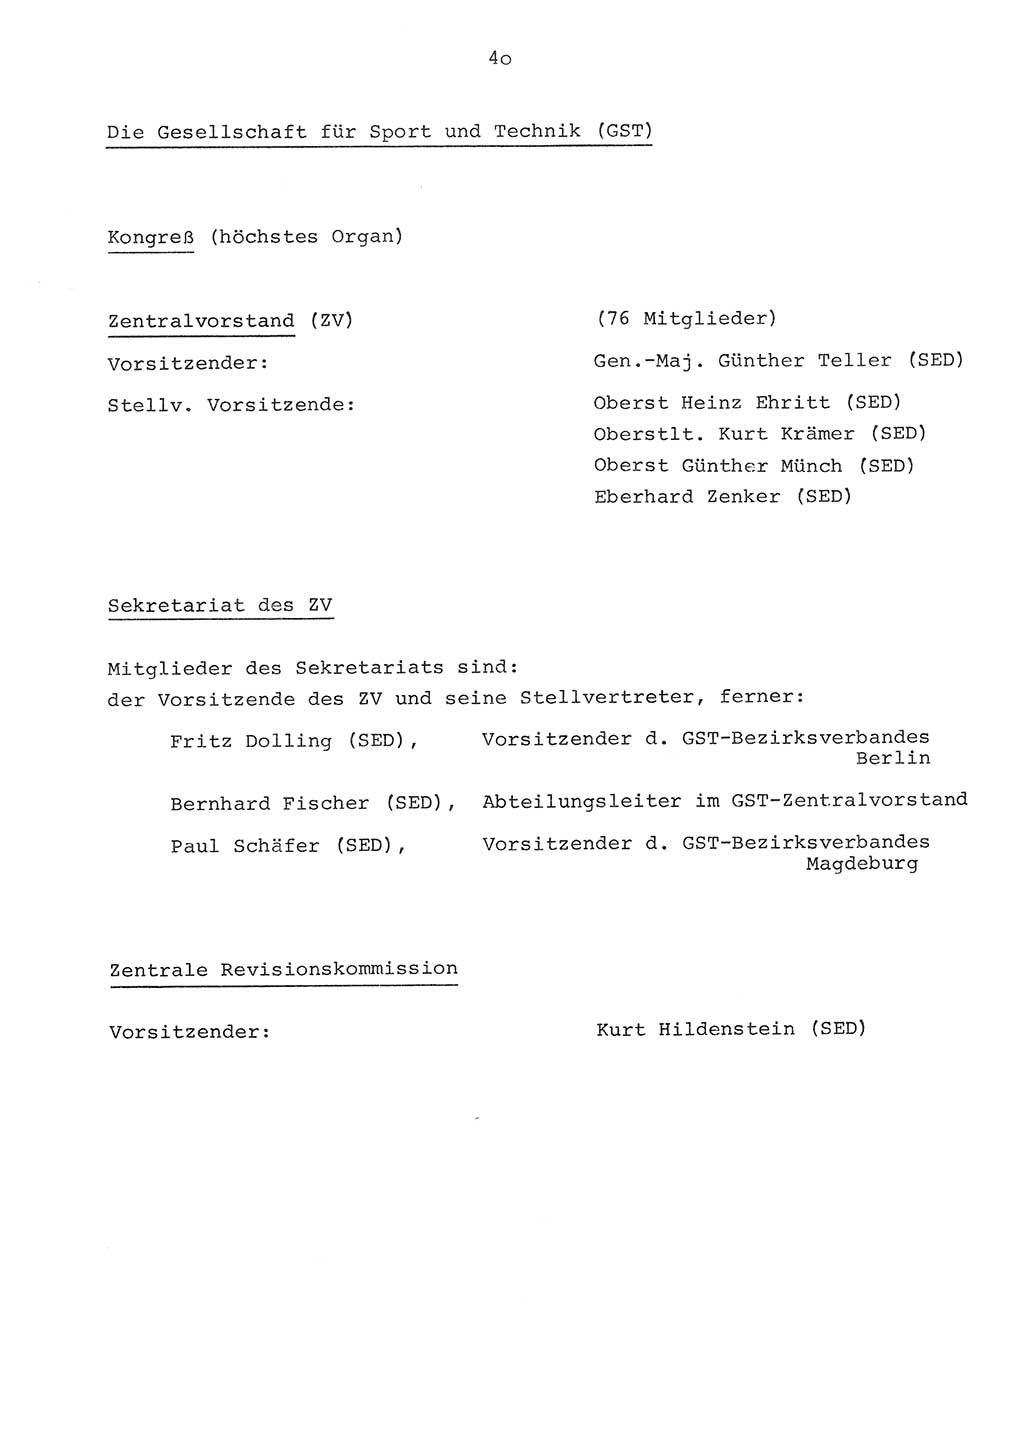 Parteiapparat der Deutschen Demokratischen Republik (DDR) 1970, Seite 40 (Parteiapp. DDR 1970, S. 40)